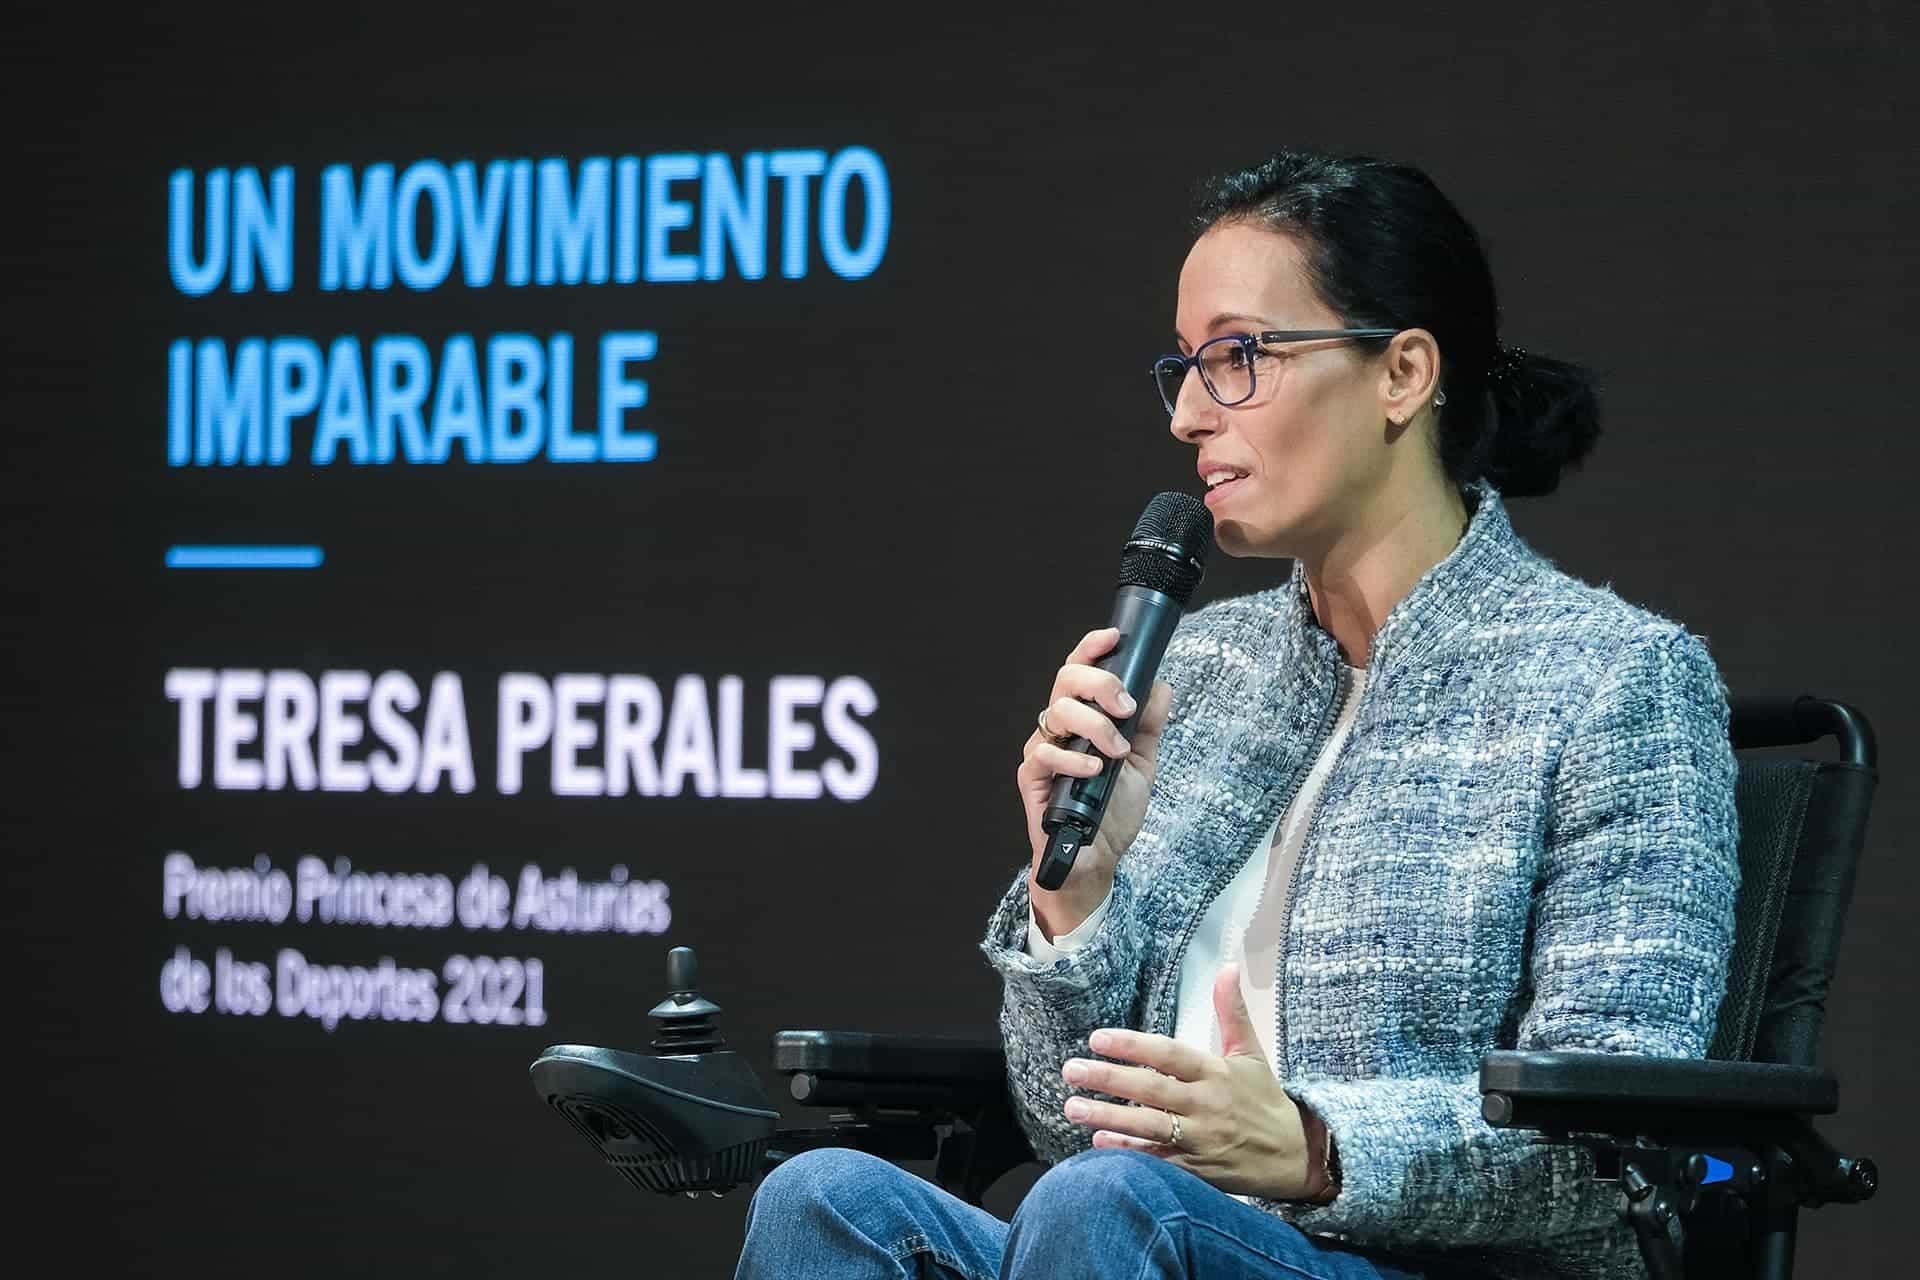 Teresa Perales, Premio Princesa de Asturias de los Deportes 2021